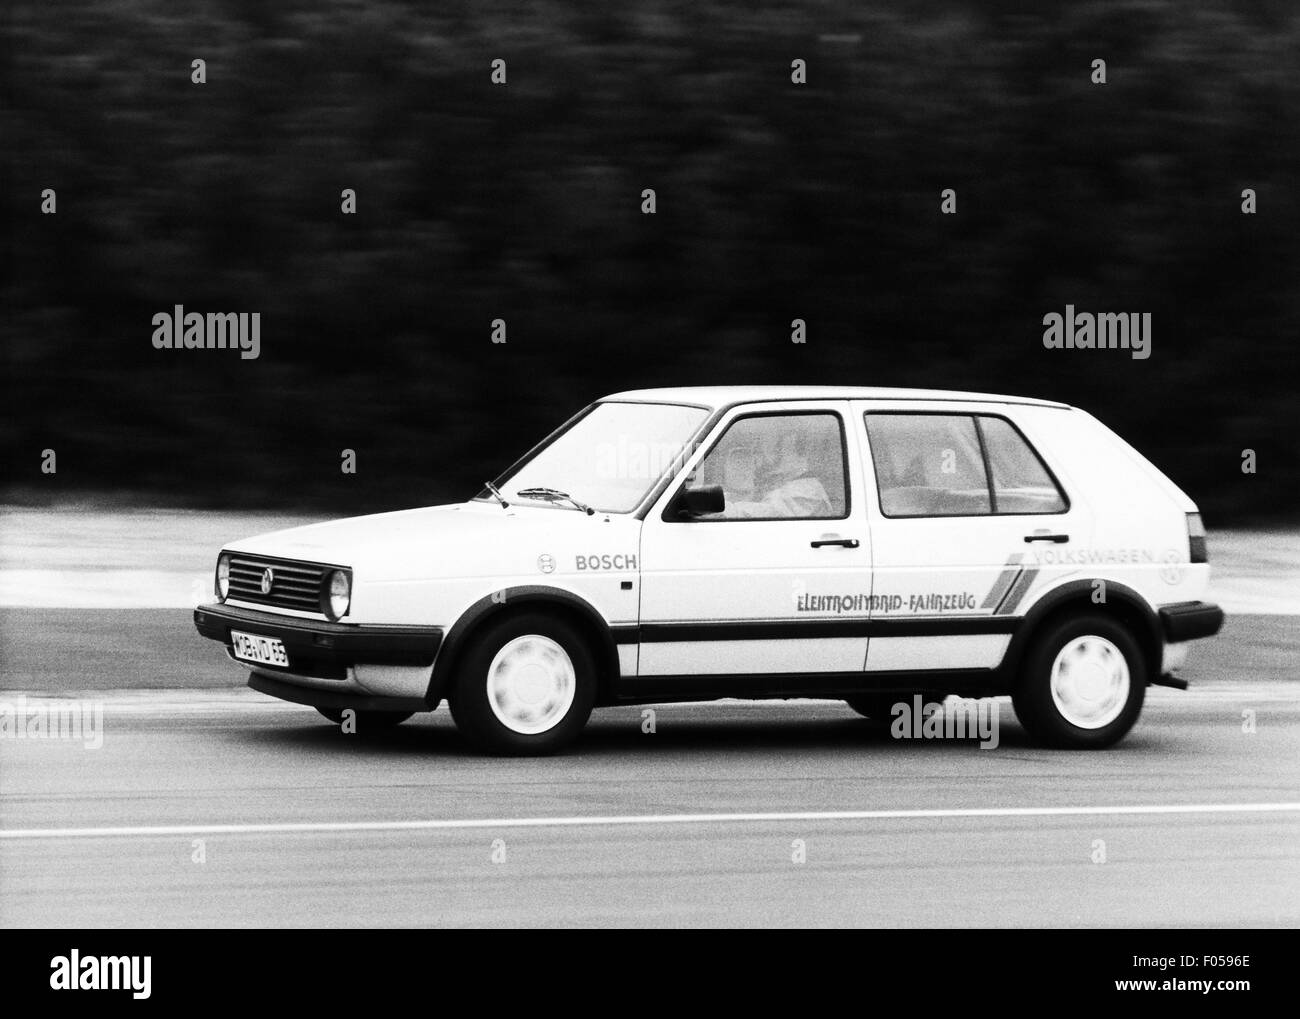 Trasporto / trasporto, auto, varianti di veicoli, Volkswagen, VW Golf,  veicolo di prova con guida ibrida, anni 80, diritti  aggiuntivi-clearance-non disponibile Foto stock - Alamy